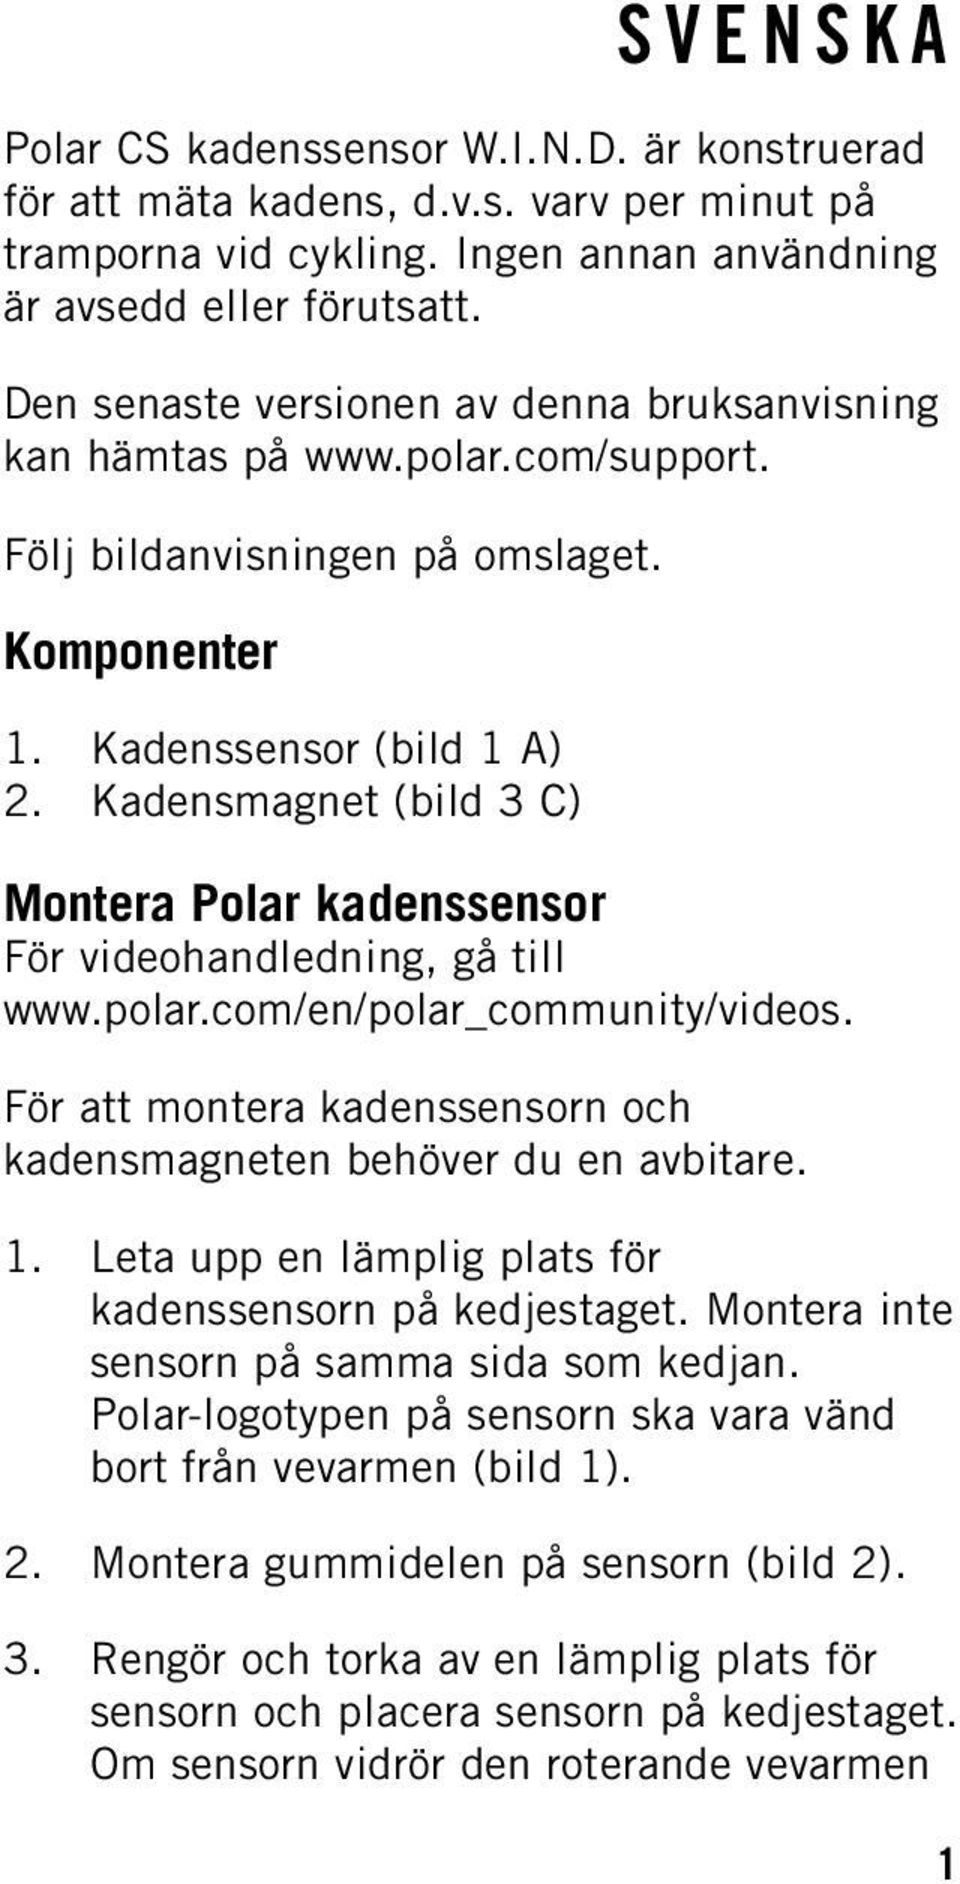 Kadensmagnet (bild 3 C) Montera Polar kadenssensor För videohandledning, gå till www.polar.com/en/polar_community/videos. För att montera kadenssensorn och kadensmagneten behöver du en avbitare. 1.